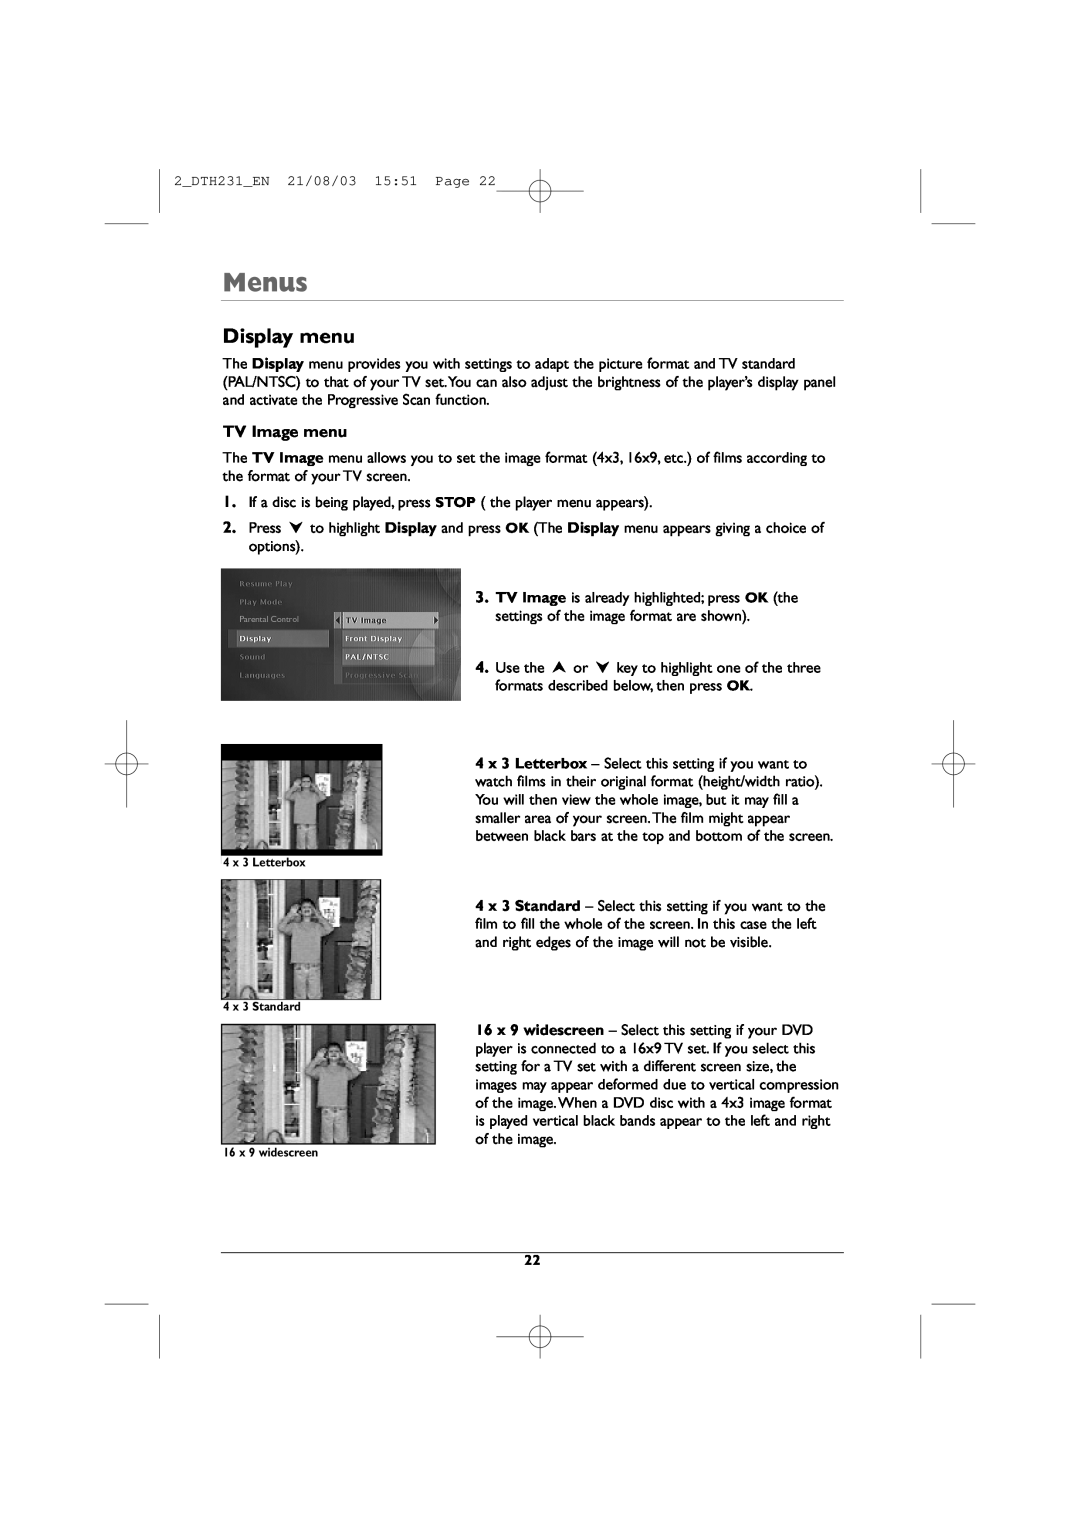 Technicolor - Thomson DTH231 manual Display menu, TV Image menu, Menus 